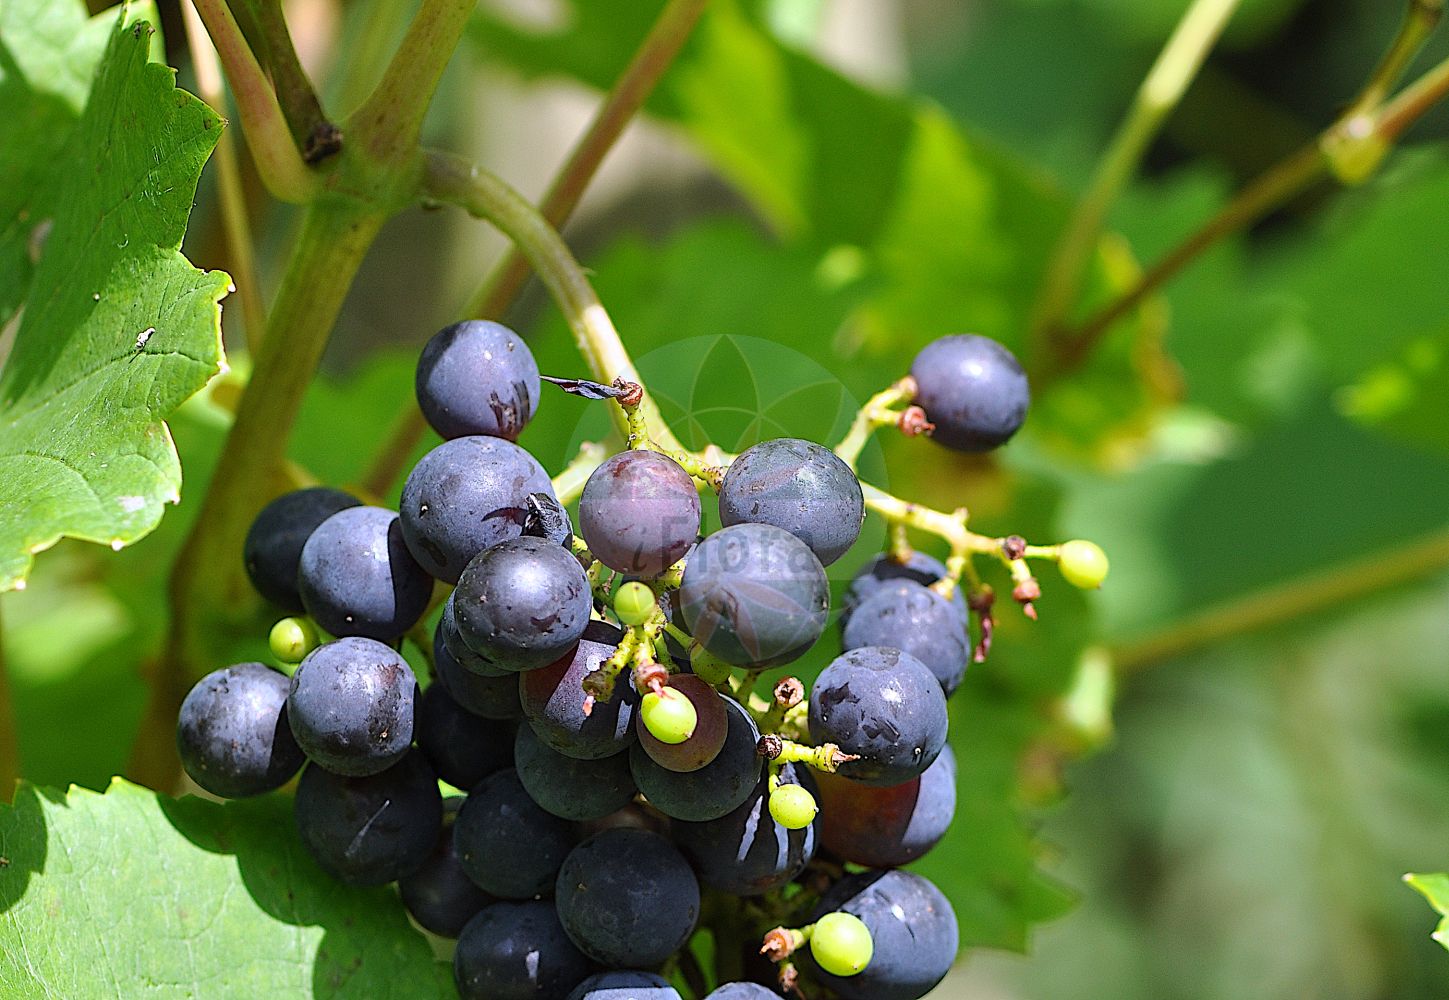 Foto von Vitis vinifera (Weinrebe - Grape-vine). ---- Photo of Vitis vinifera (Weinrebe - Grape-vine).(Vitis vinifera,Weinrebe,Grape-vine,Cissus vinifera,Vitis laciniosa,Vitis sylvestris,Vitis vinifera,Vitis vinifera var. sylvestris,Weinrebe,Echte Weinrebe,Kultur-Weinrebe,Grape-vine,Common Grapevine,Wine Grape,European Grape,Wild Grape,Vitis,Rebe,Grapevine,Vitaceae,Weingewächse,Grape family)